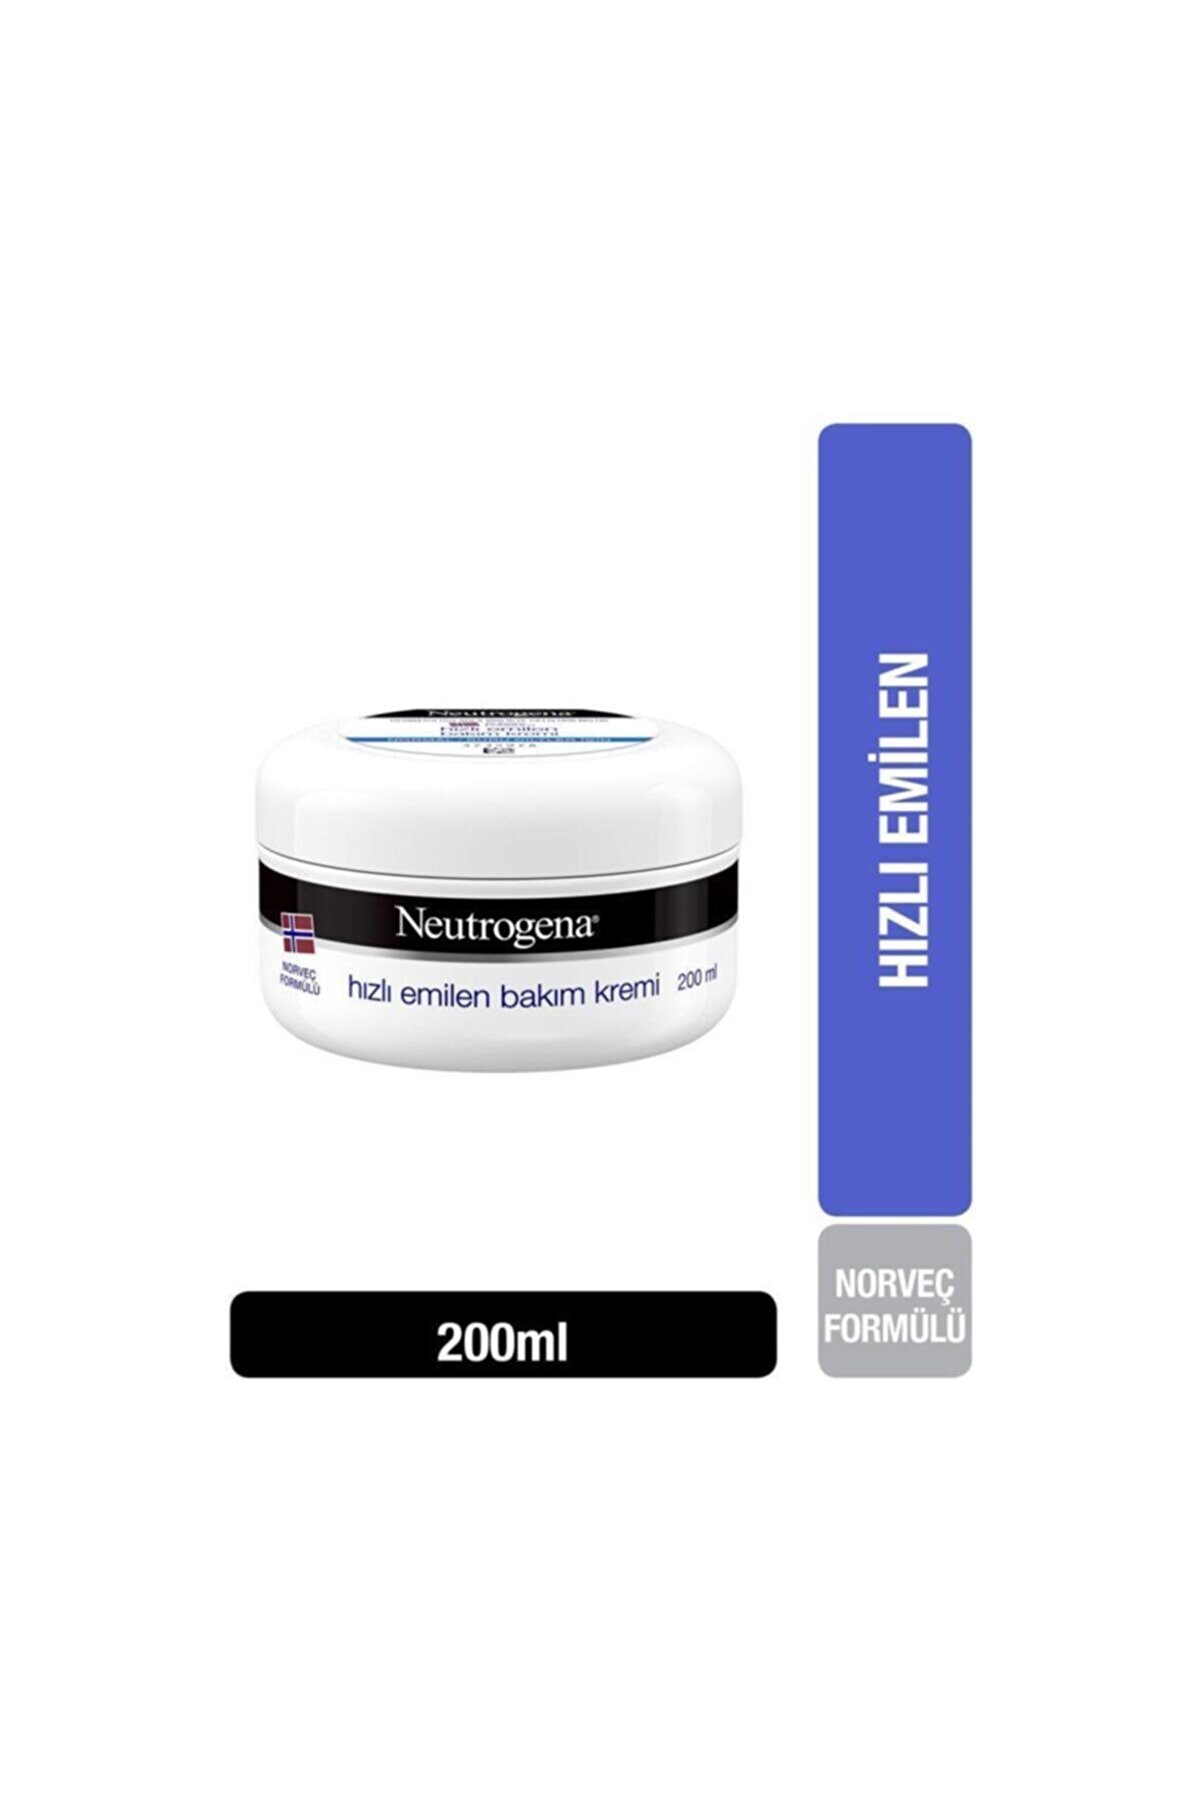 Neutrogena Hızlı Emilen Bakım Kremi 200 ml Normal / Kuru Ciltler Için